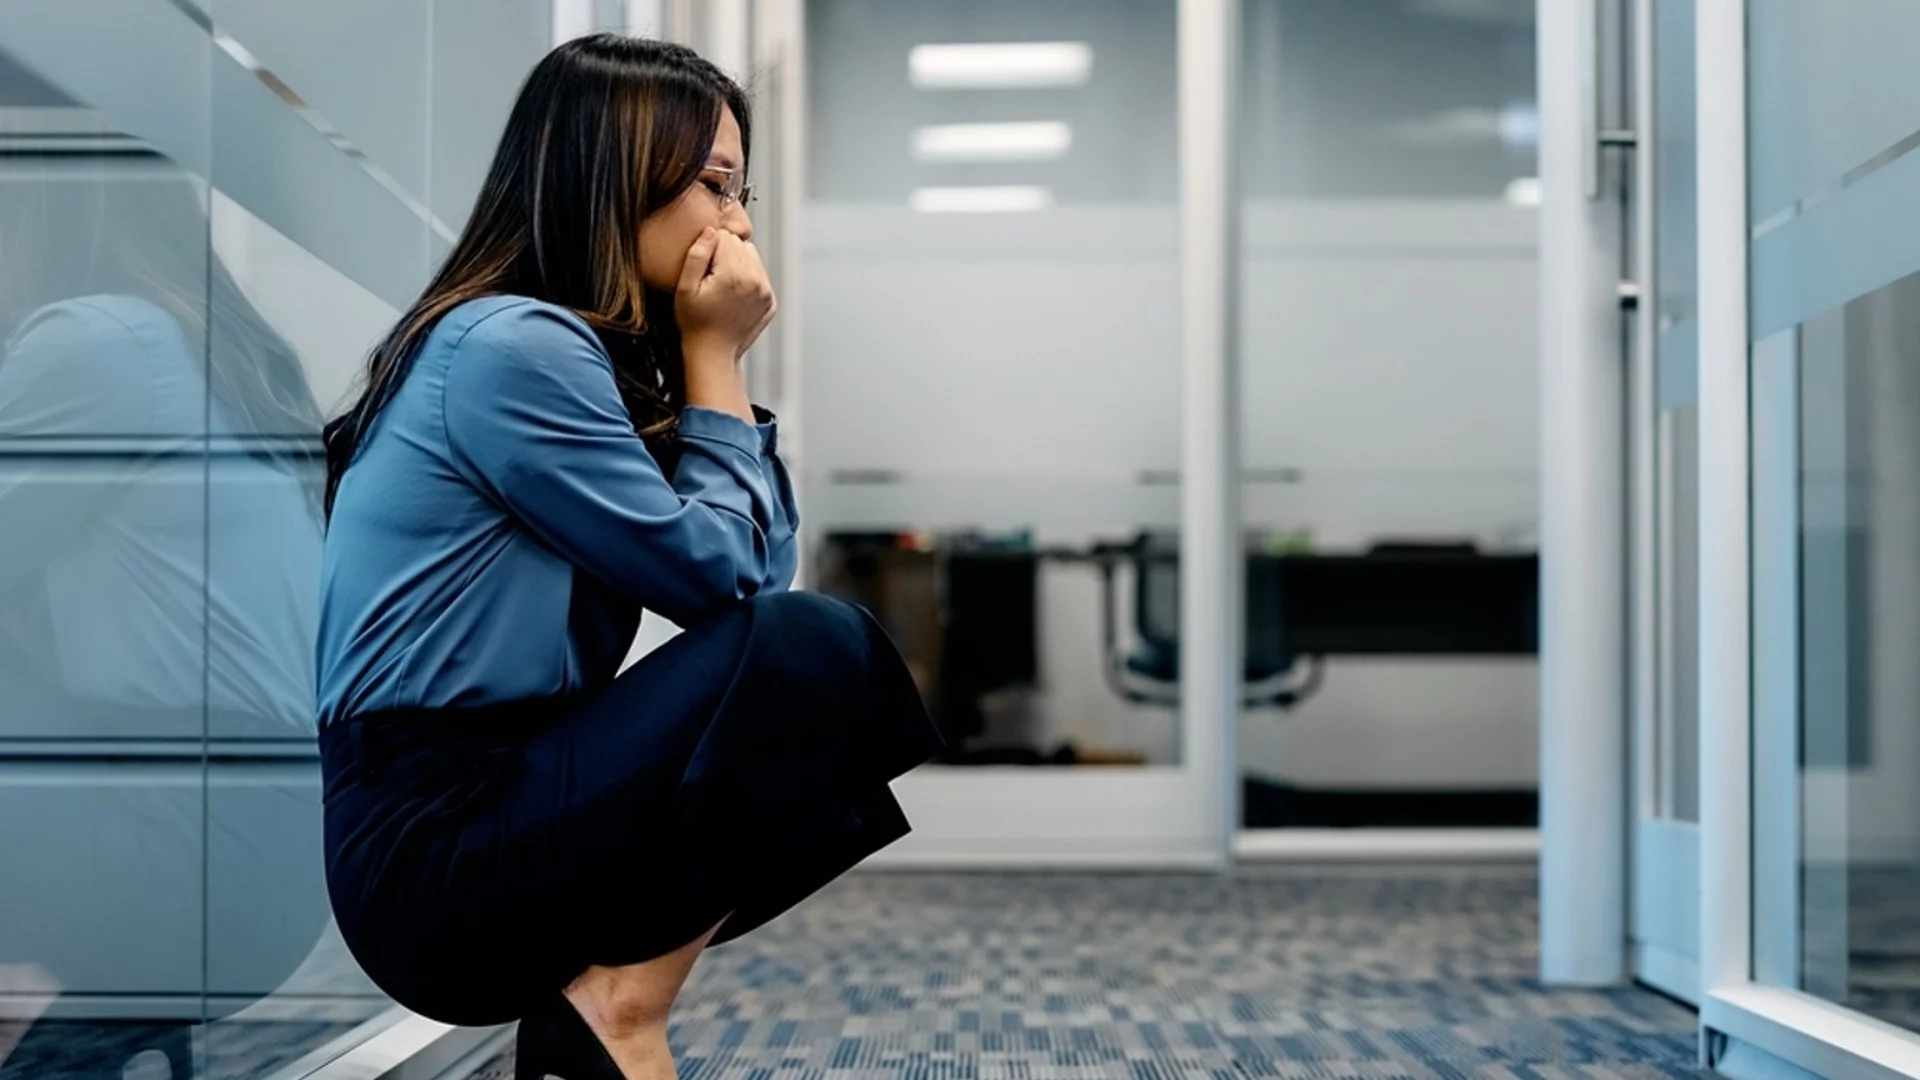 10 съвета за тези, които се страхуват да напуснат работа, която не харесват